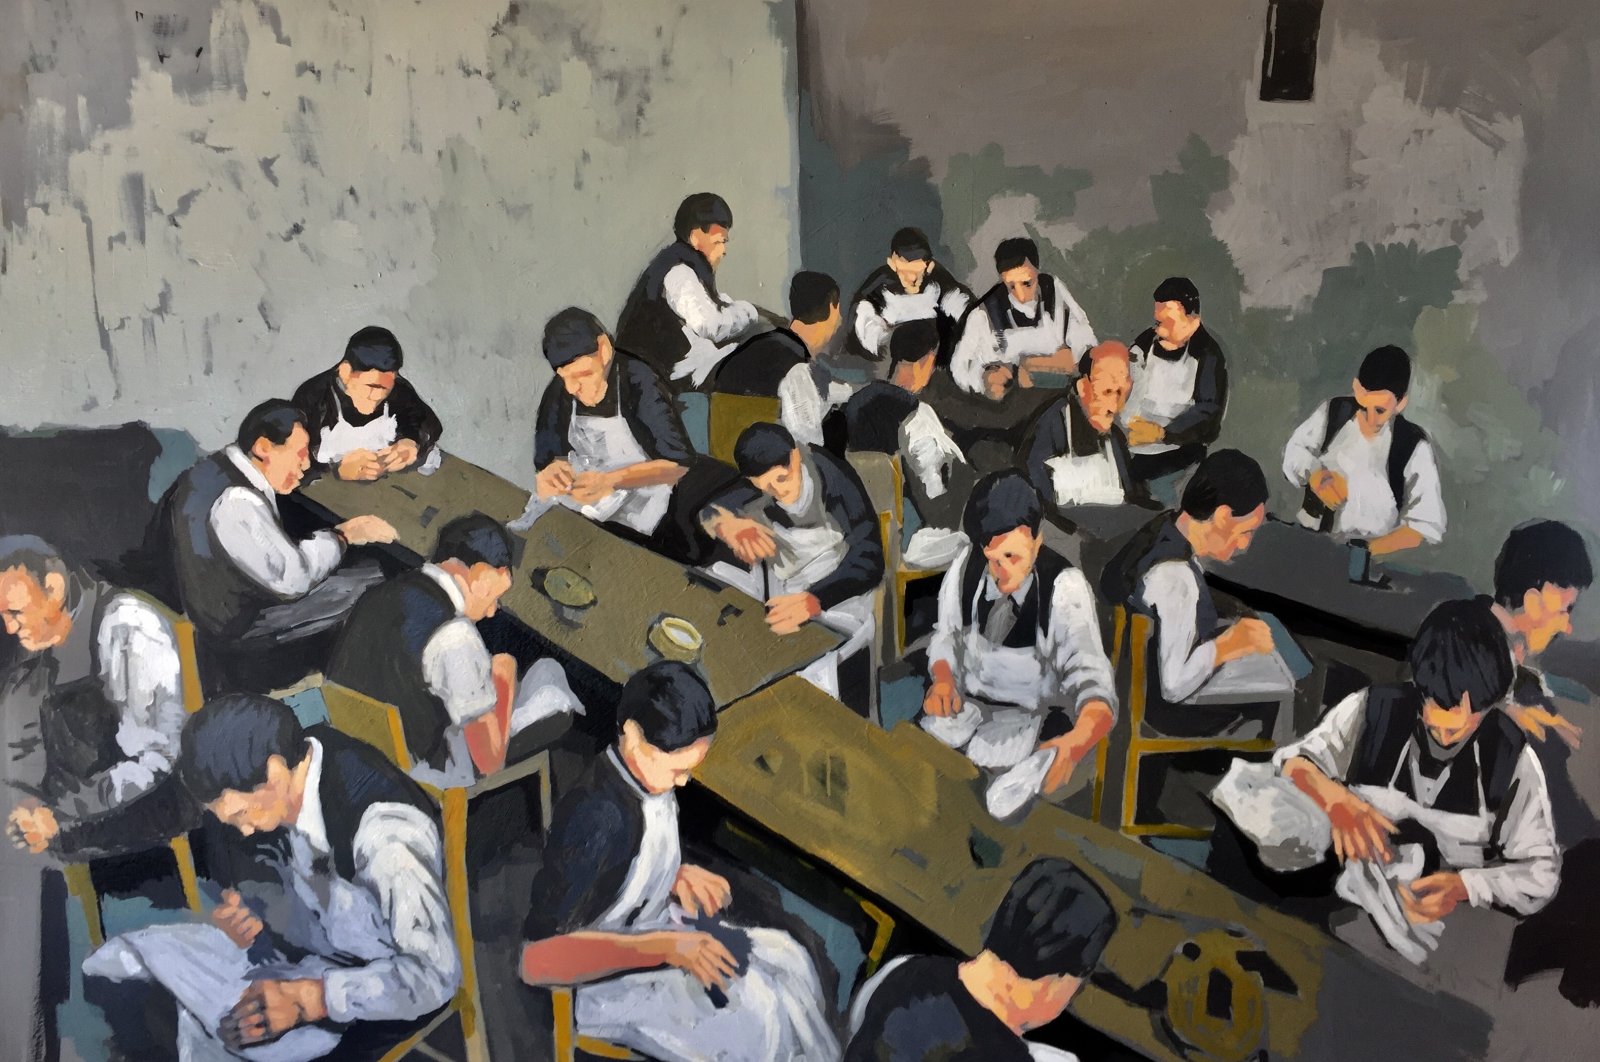 Sinan Orakçı, "Workers Children," oil on canvas, 90 by 120 centimeters.